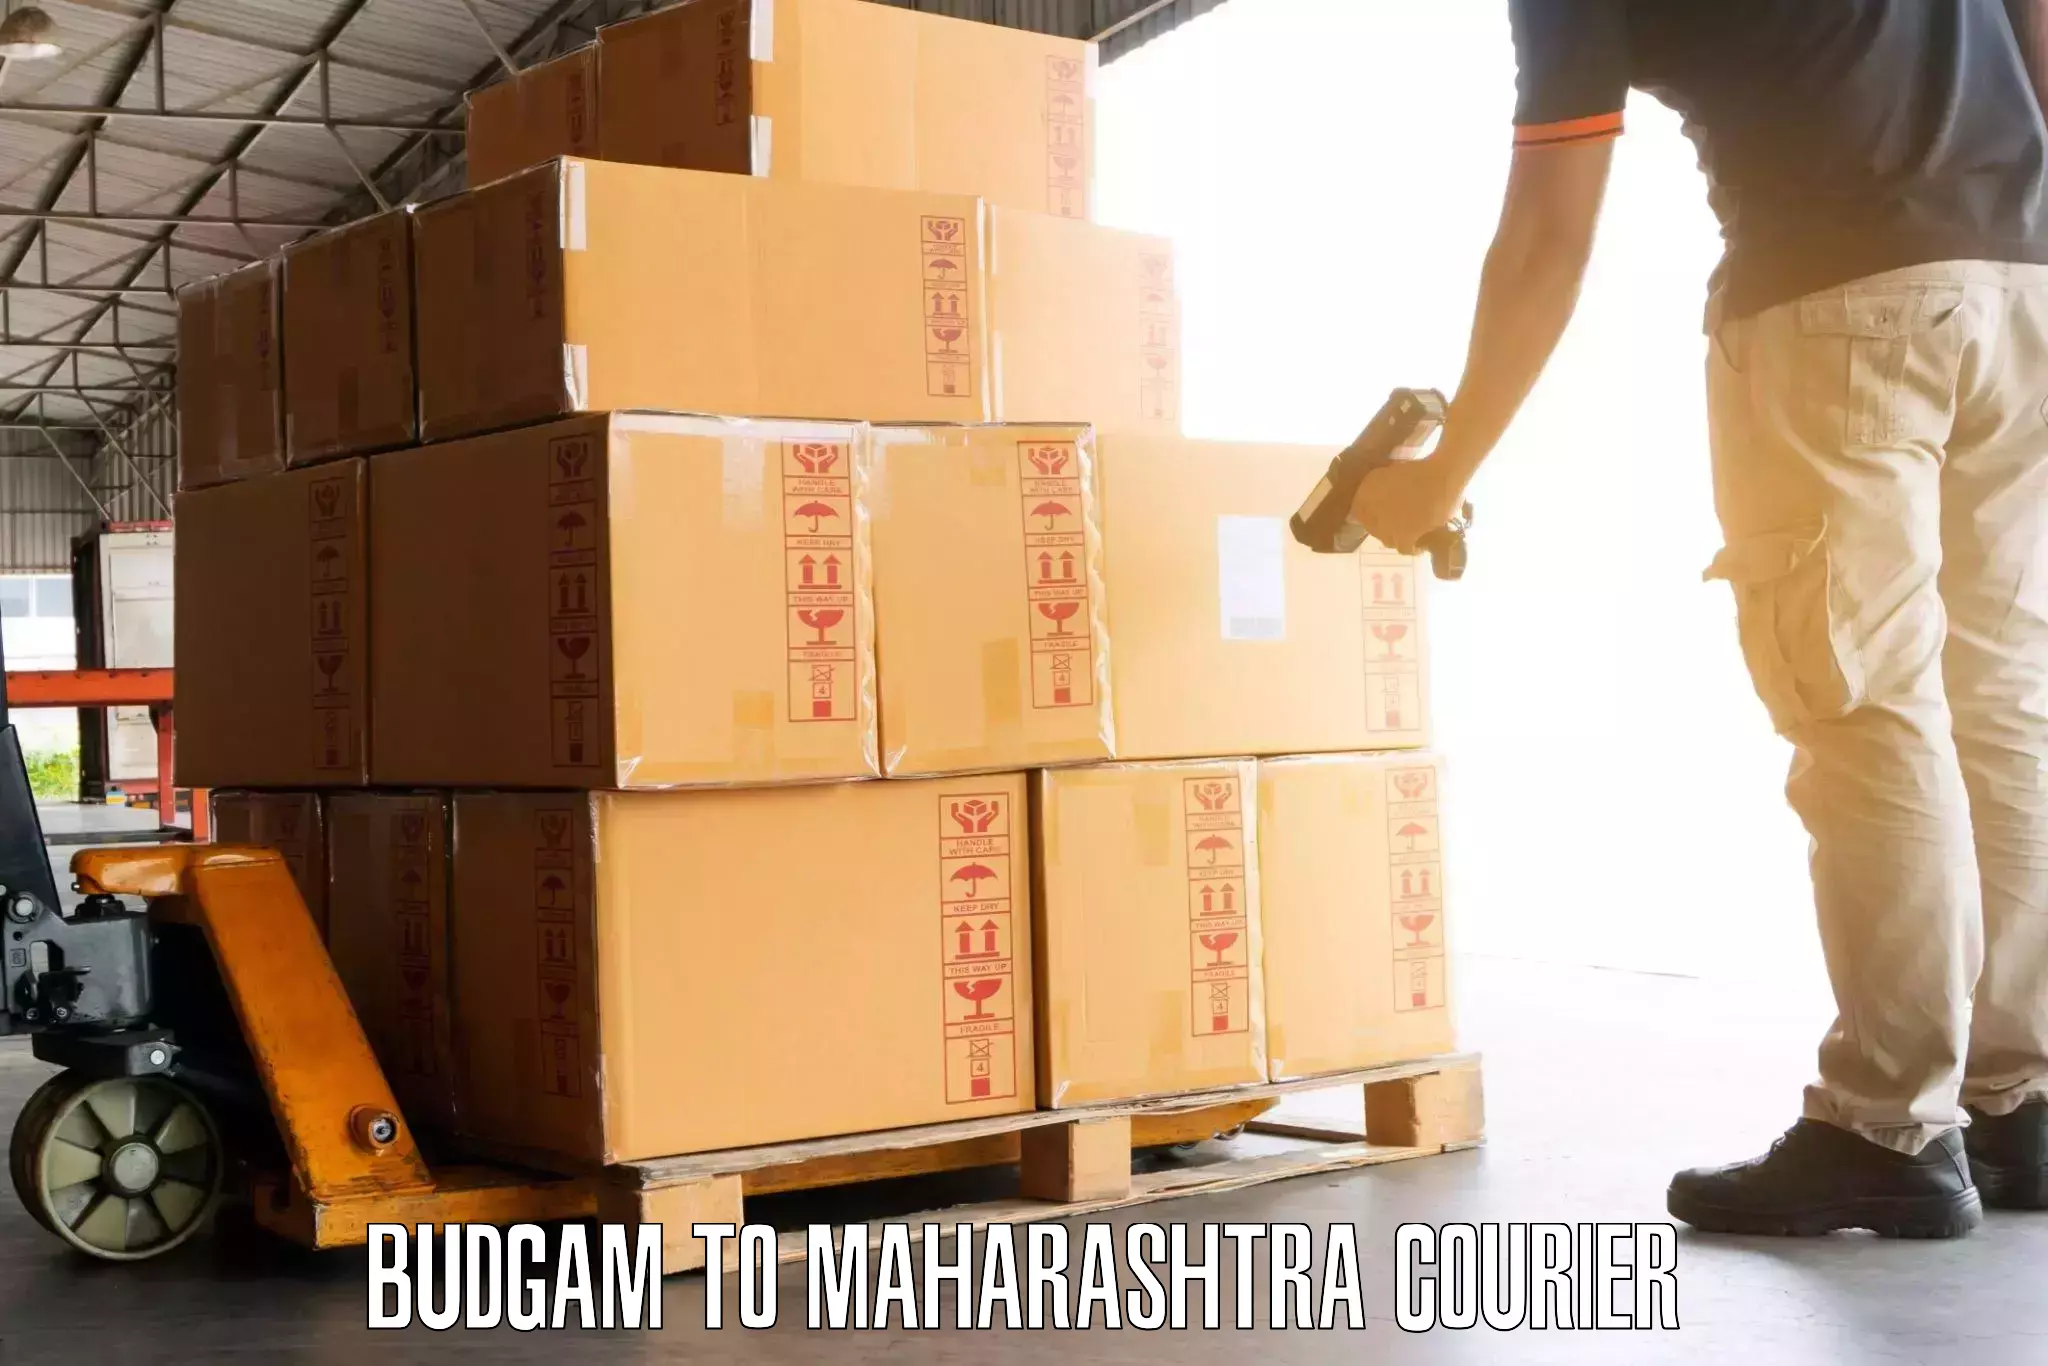 Baggage handling services Budgam to Andheri